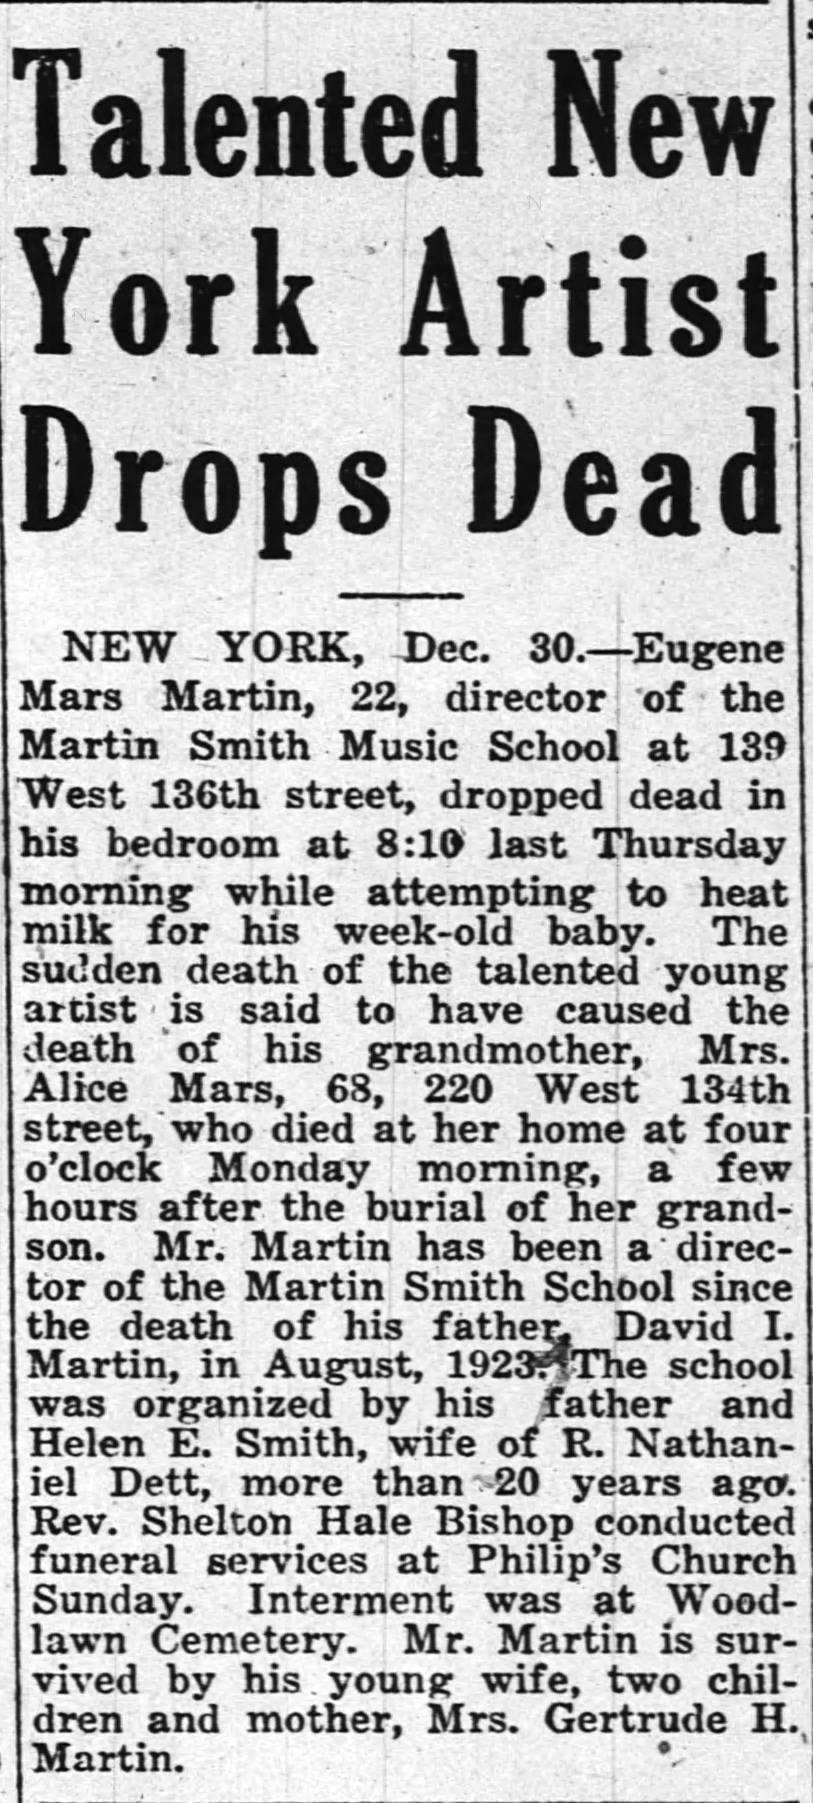 Talented New Artist Drops Dead: Eugene Mars Martin, 22